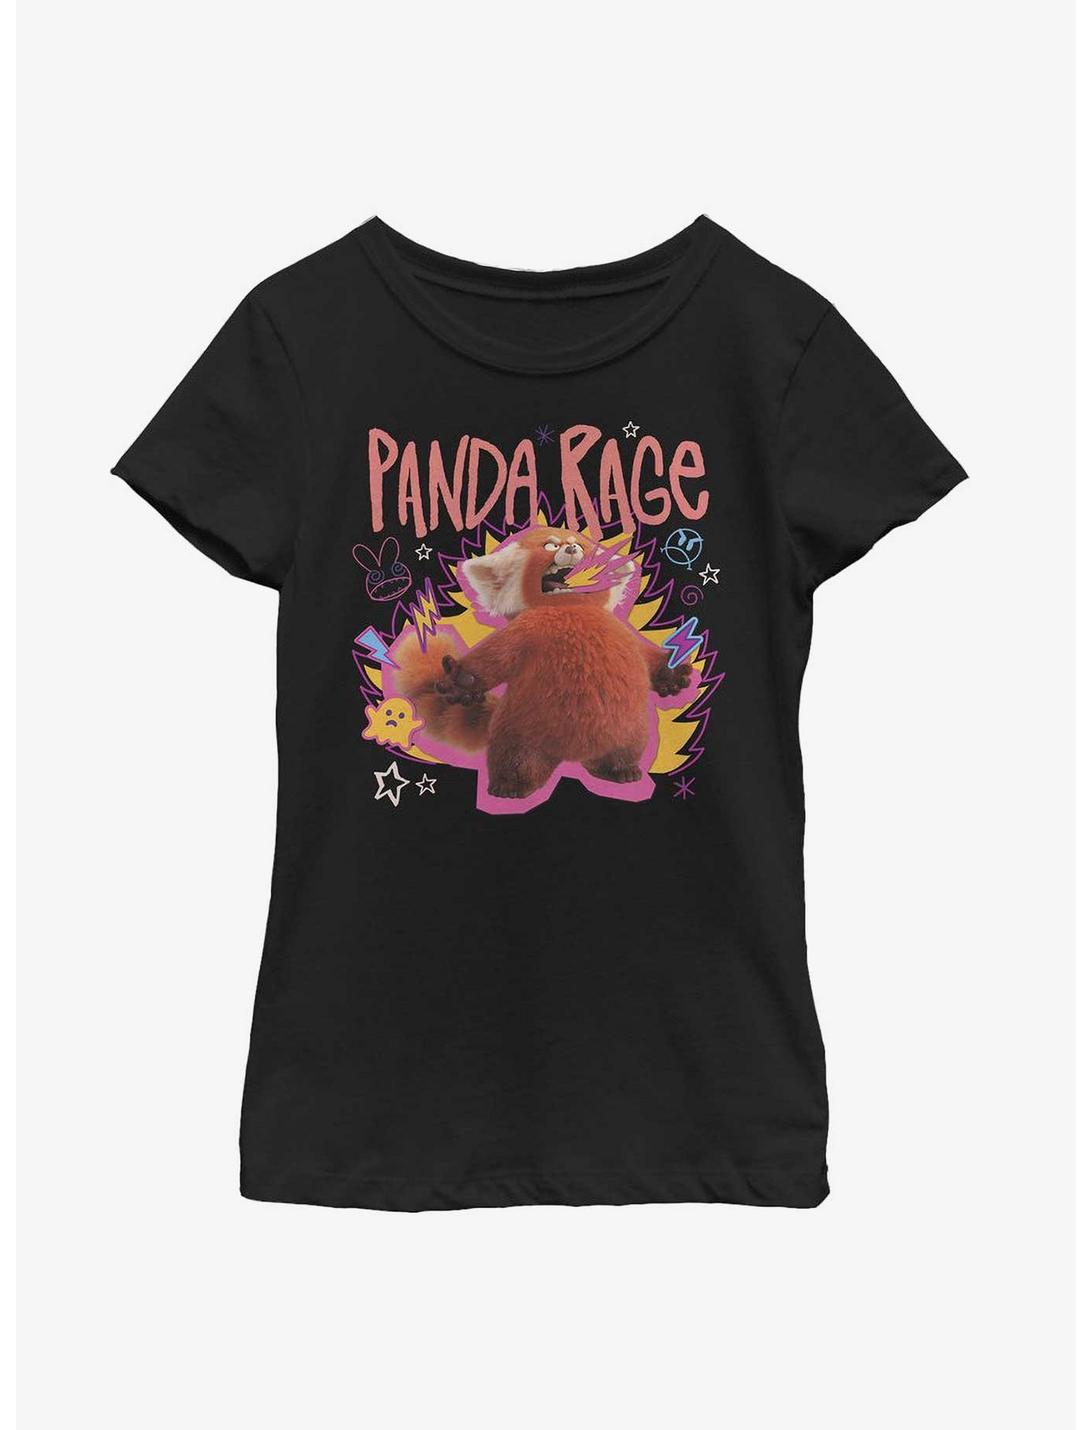 Disney Pixar Turning Red Panda Rage Portrait Youth Girls T-Shirt, BLACK, hi-res